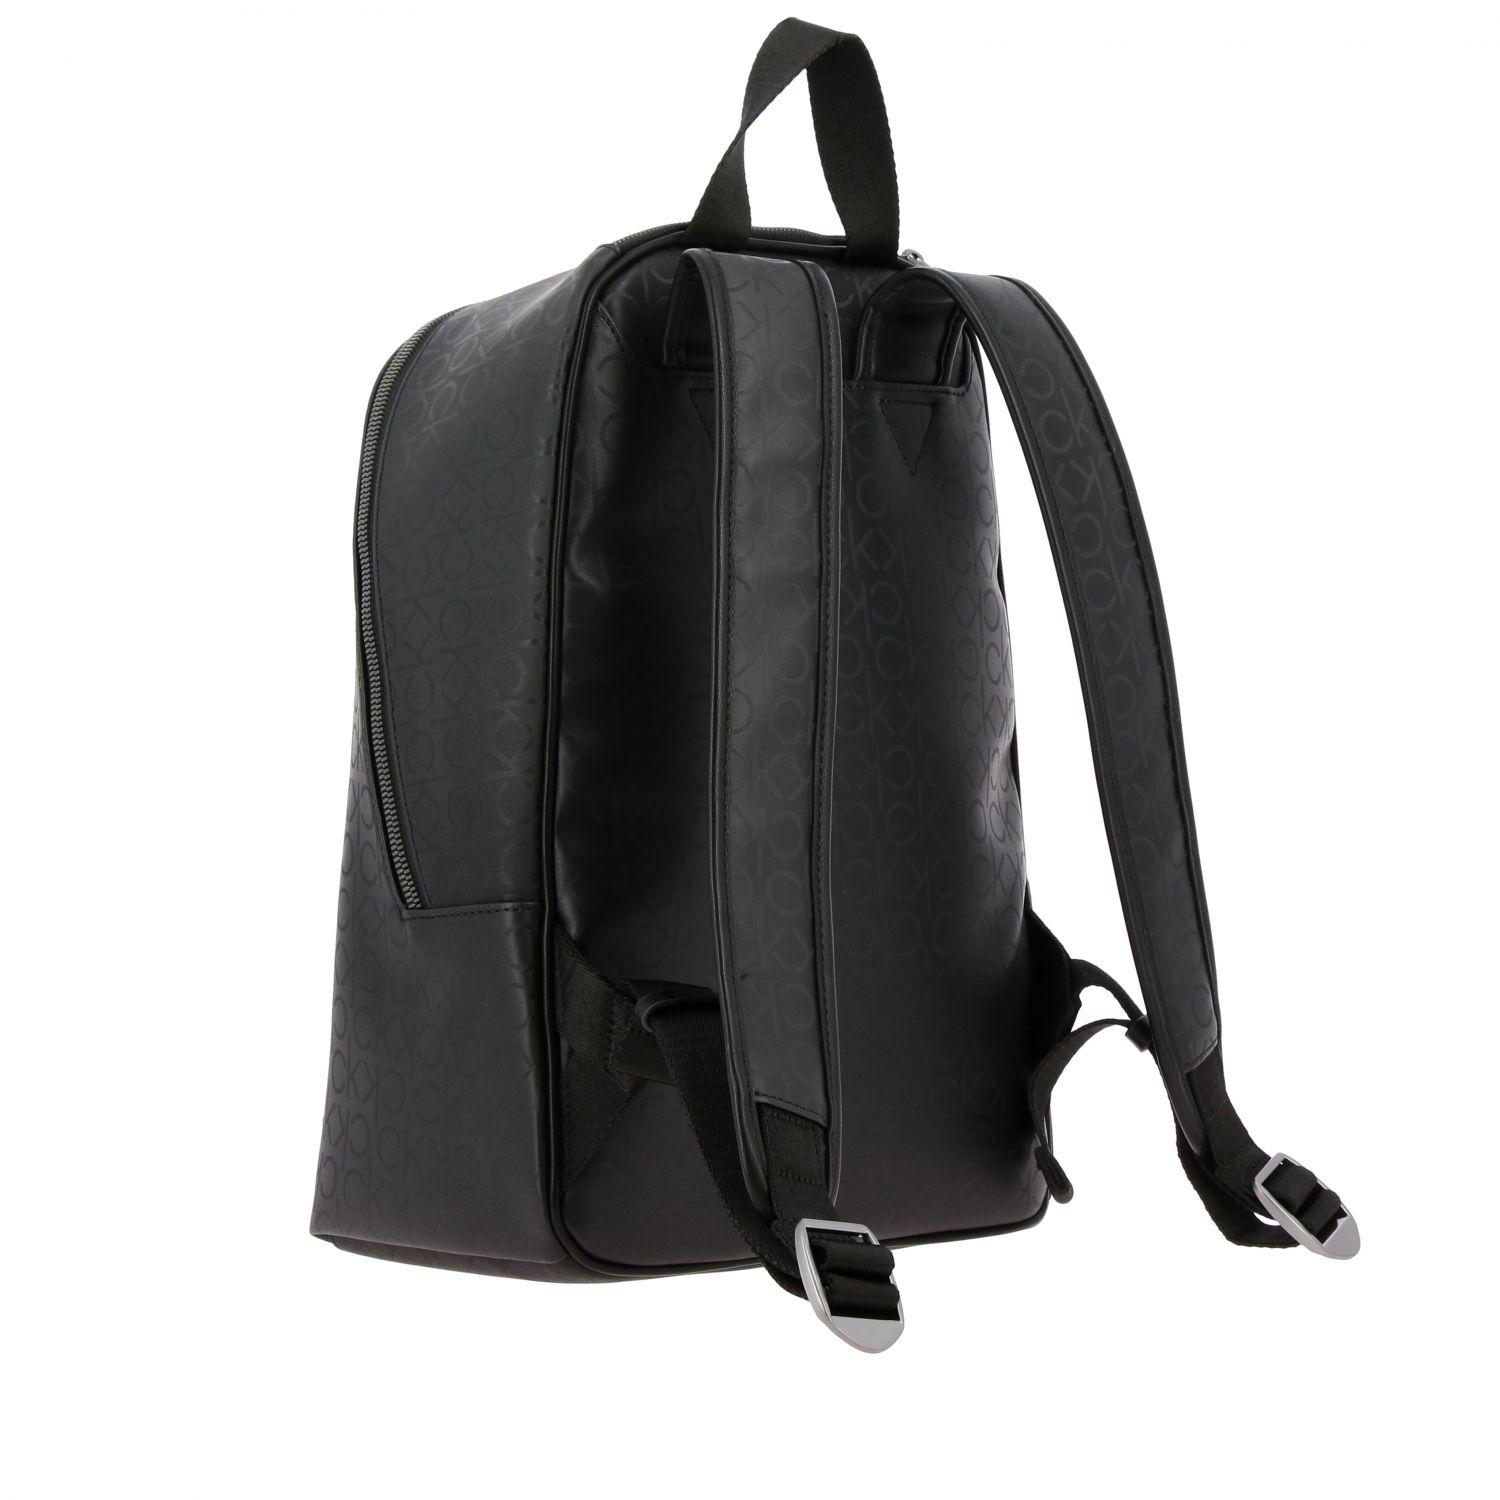 Calvin Klein Outlet: backpack for men - Black | Calvin Klein backpack ...